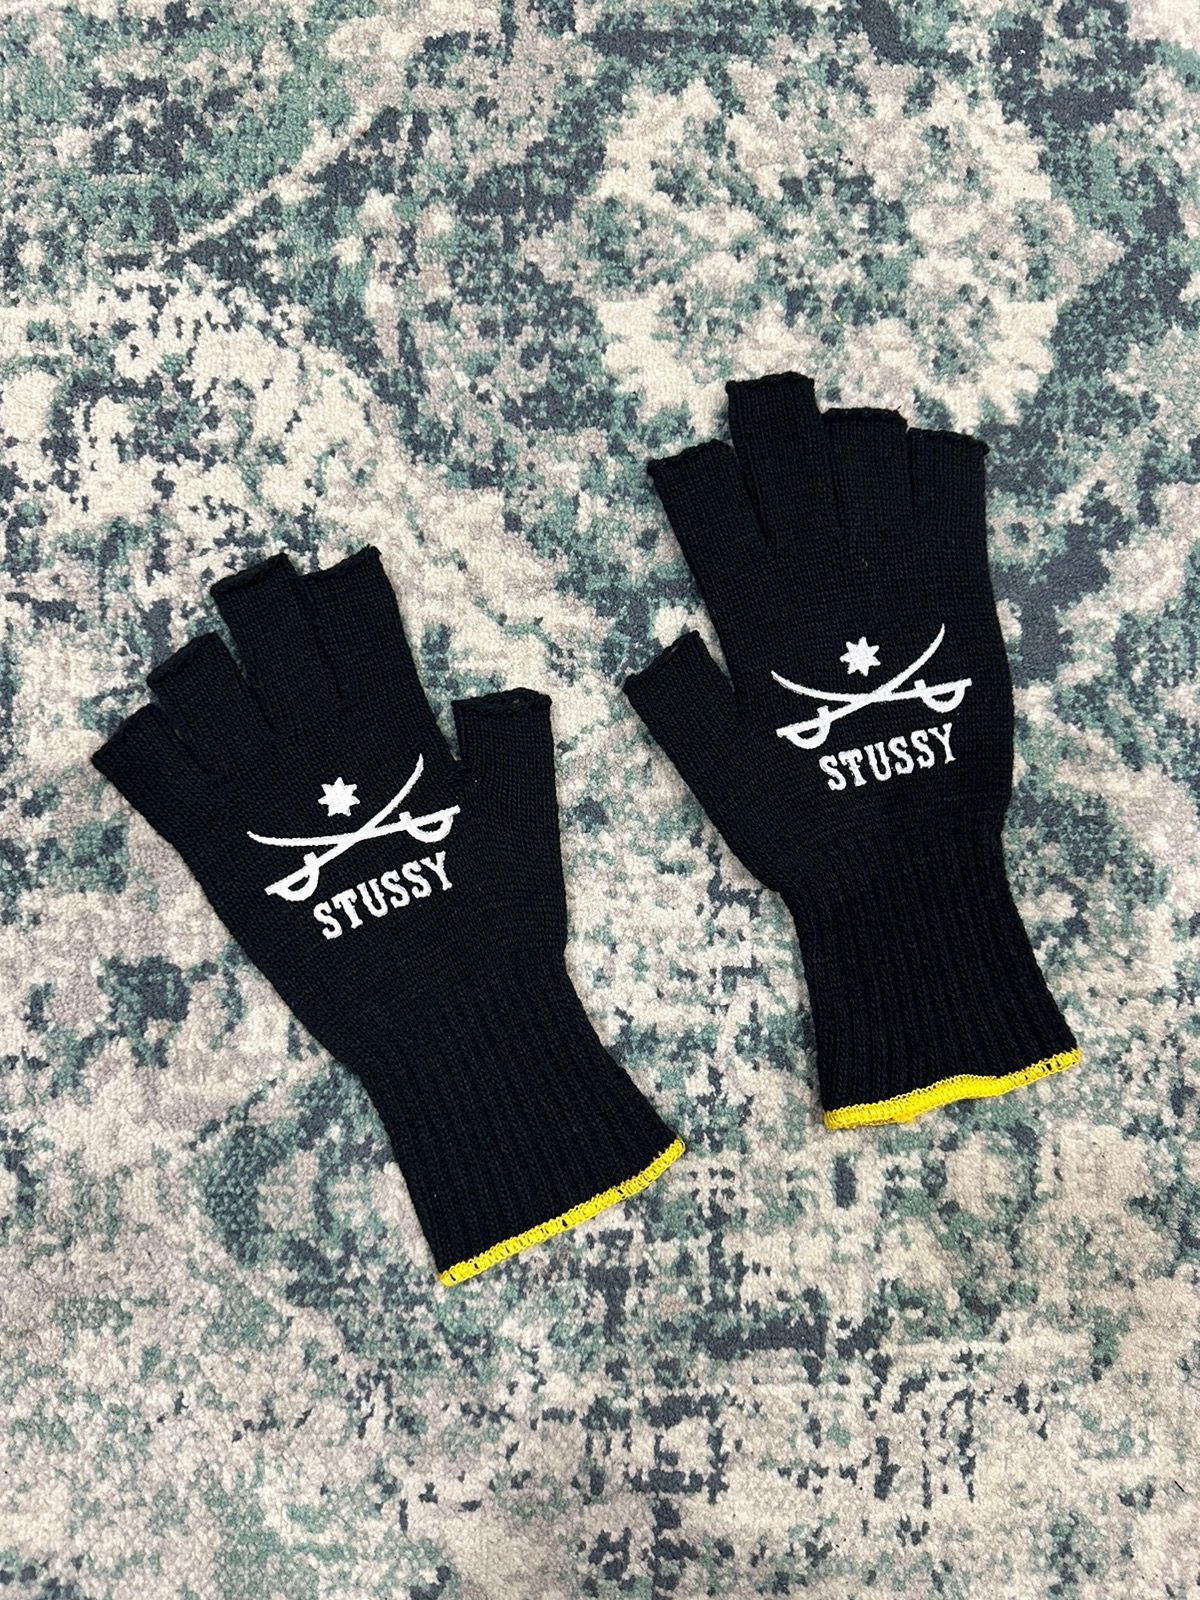 Stussy Sword Fingerless Gloves Black Yellow (Japan Only) - 2